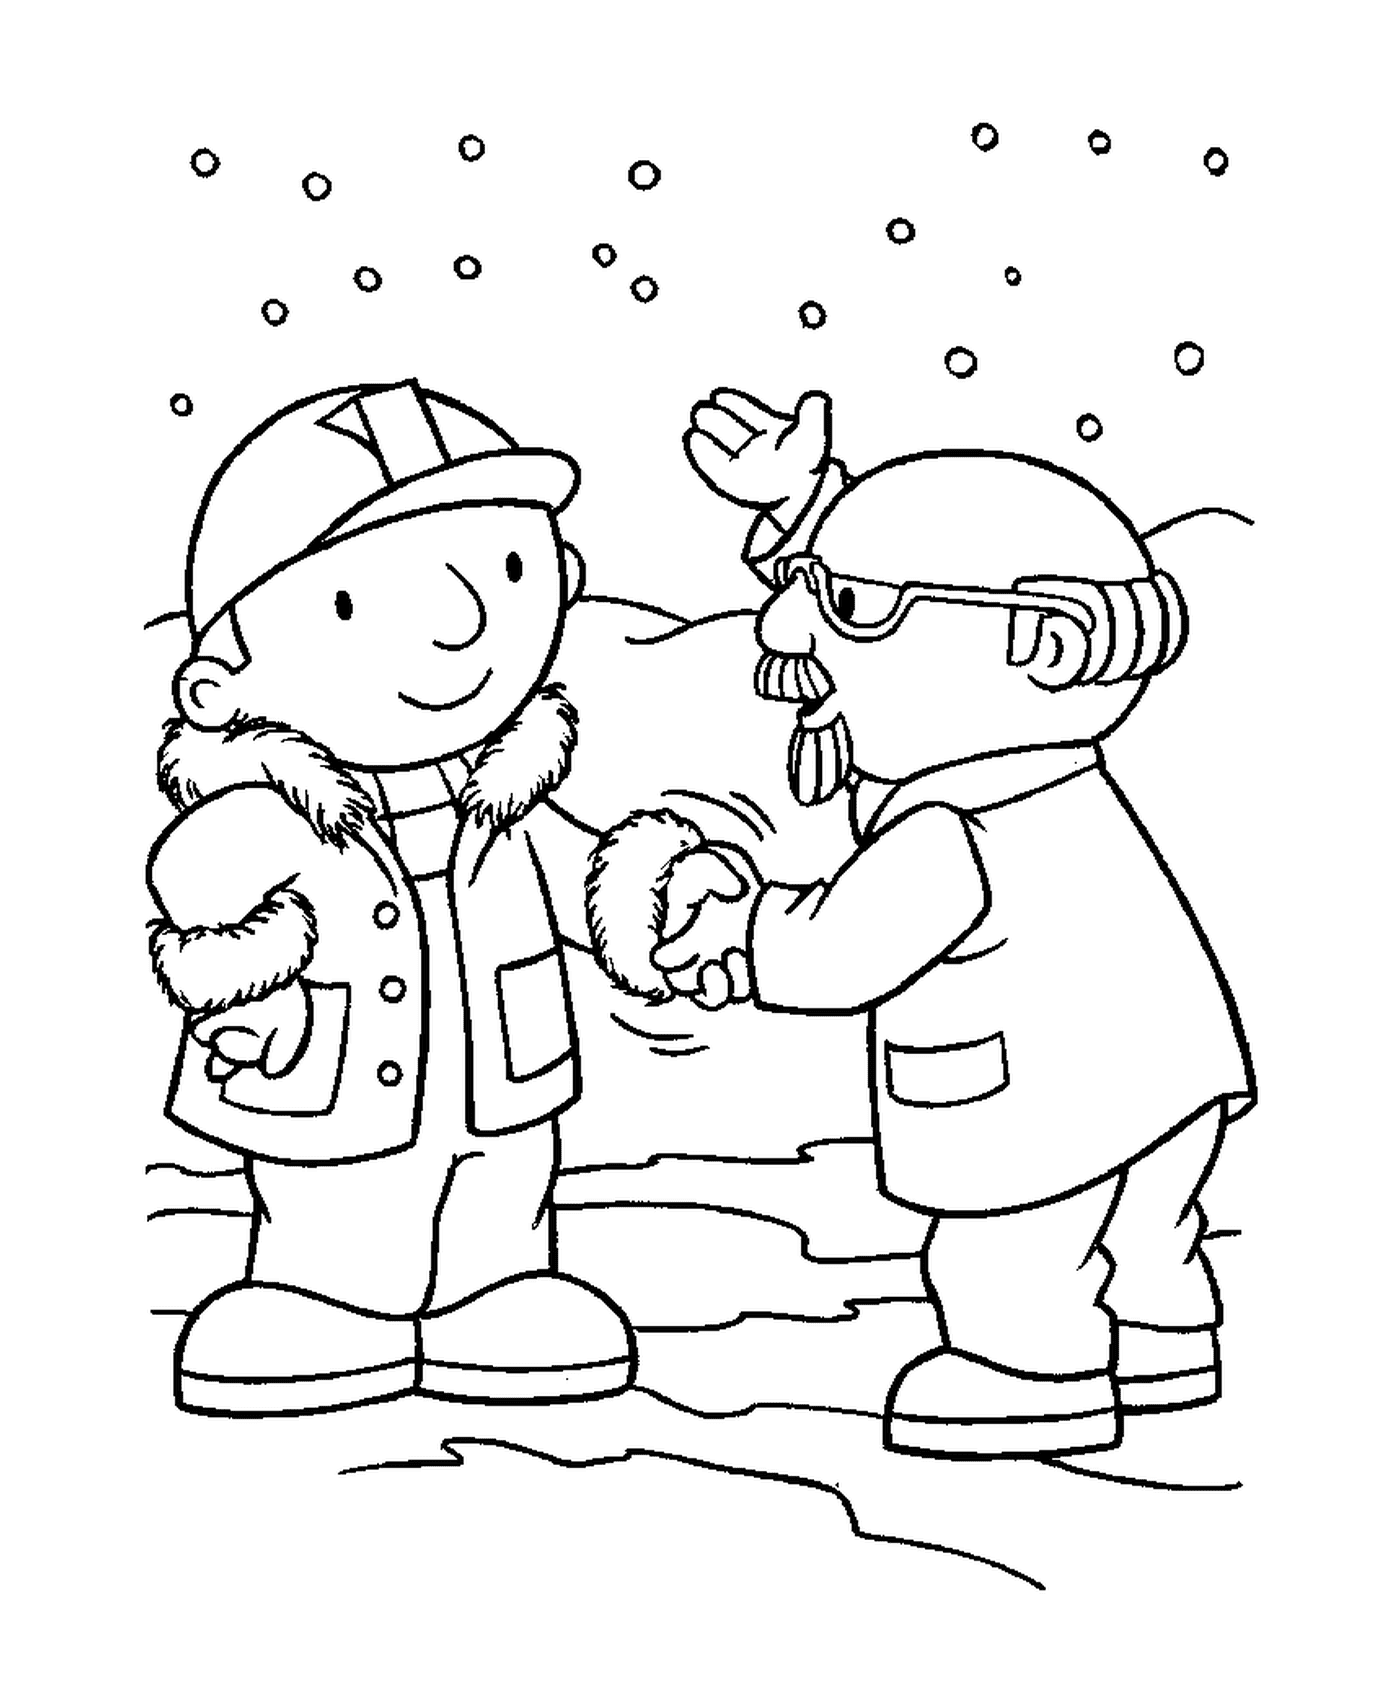   Deux personnes se serrent la main dans la neige 